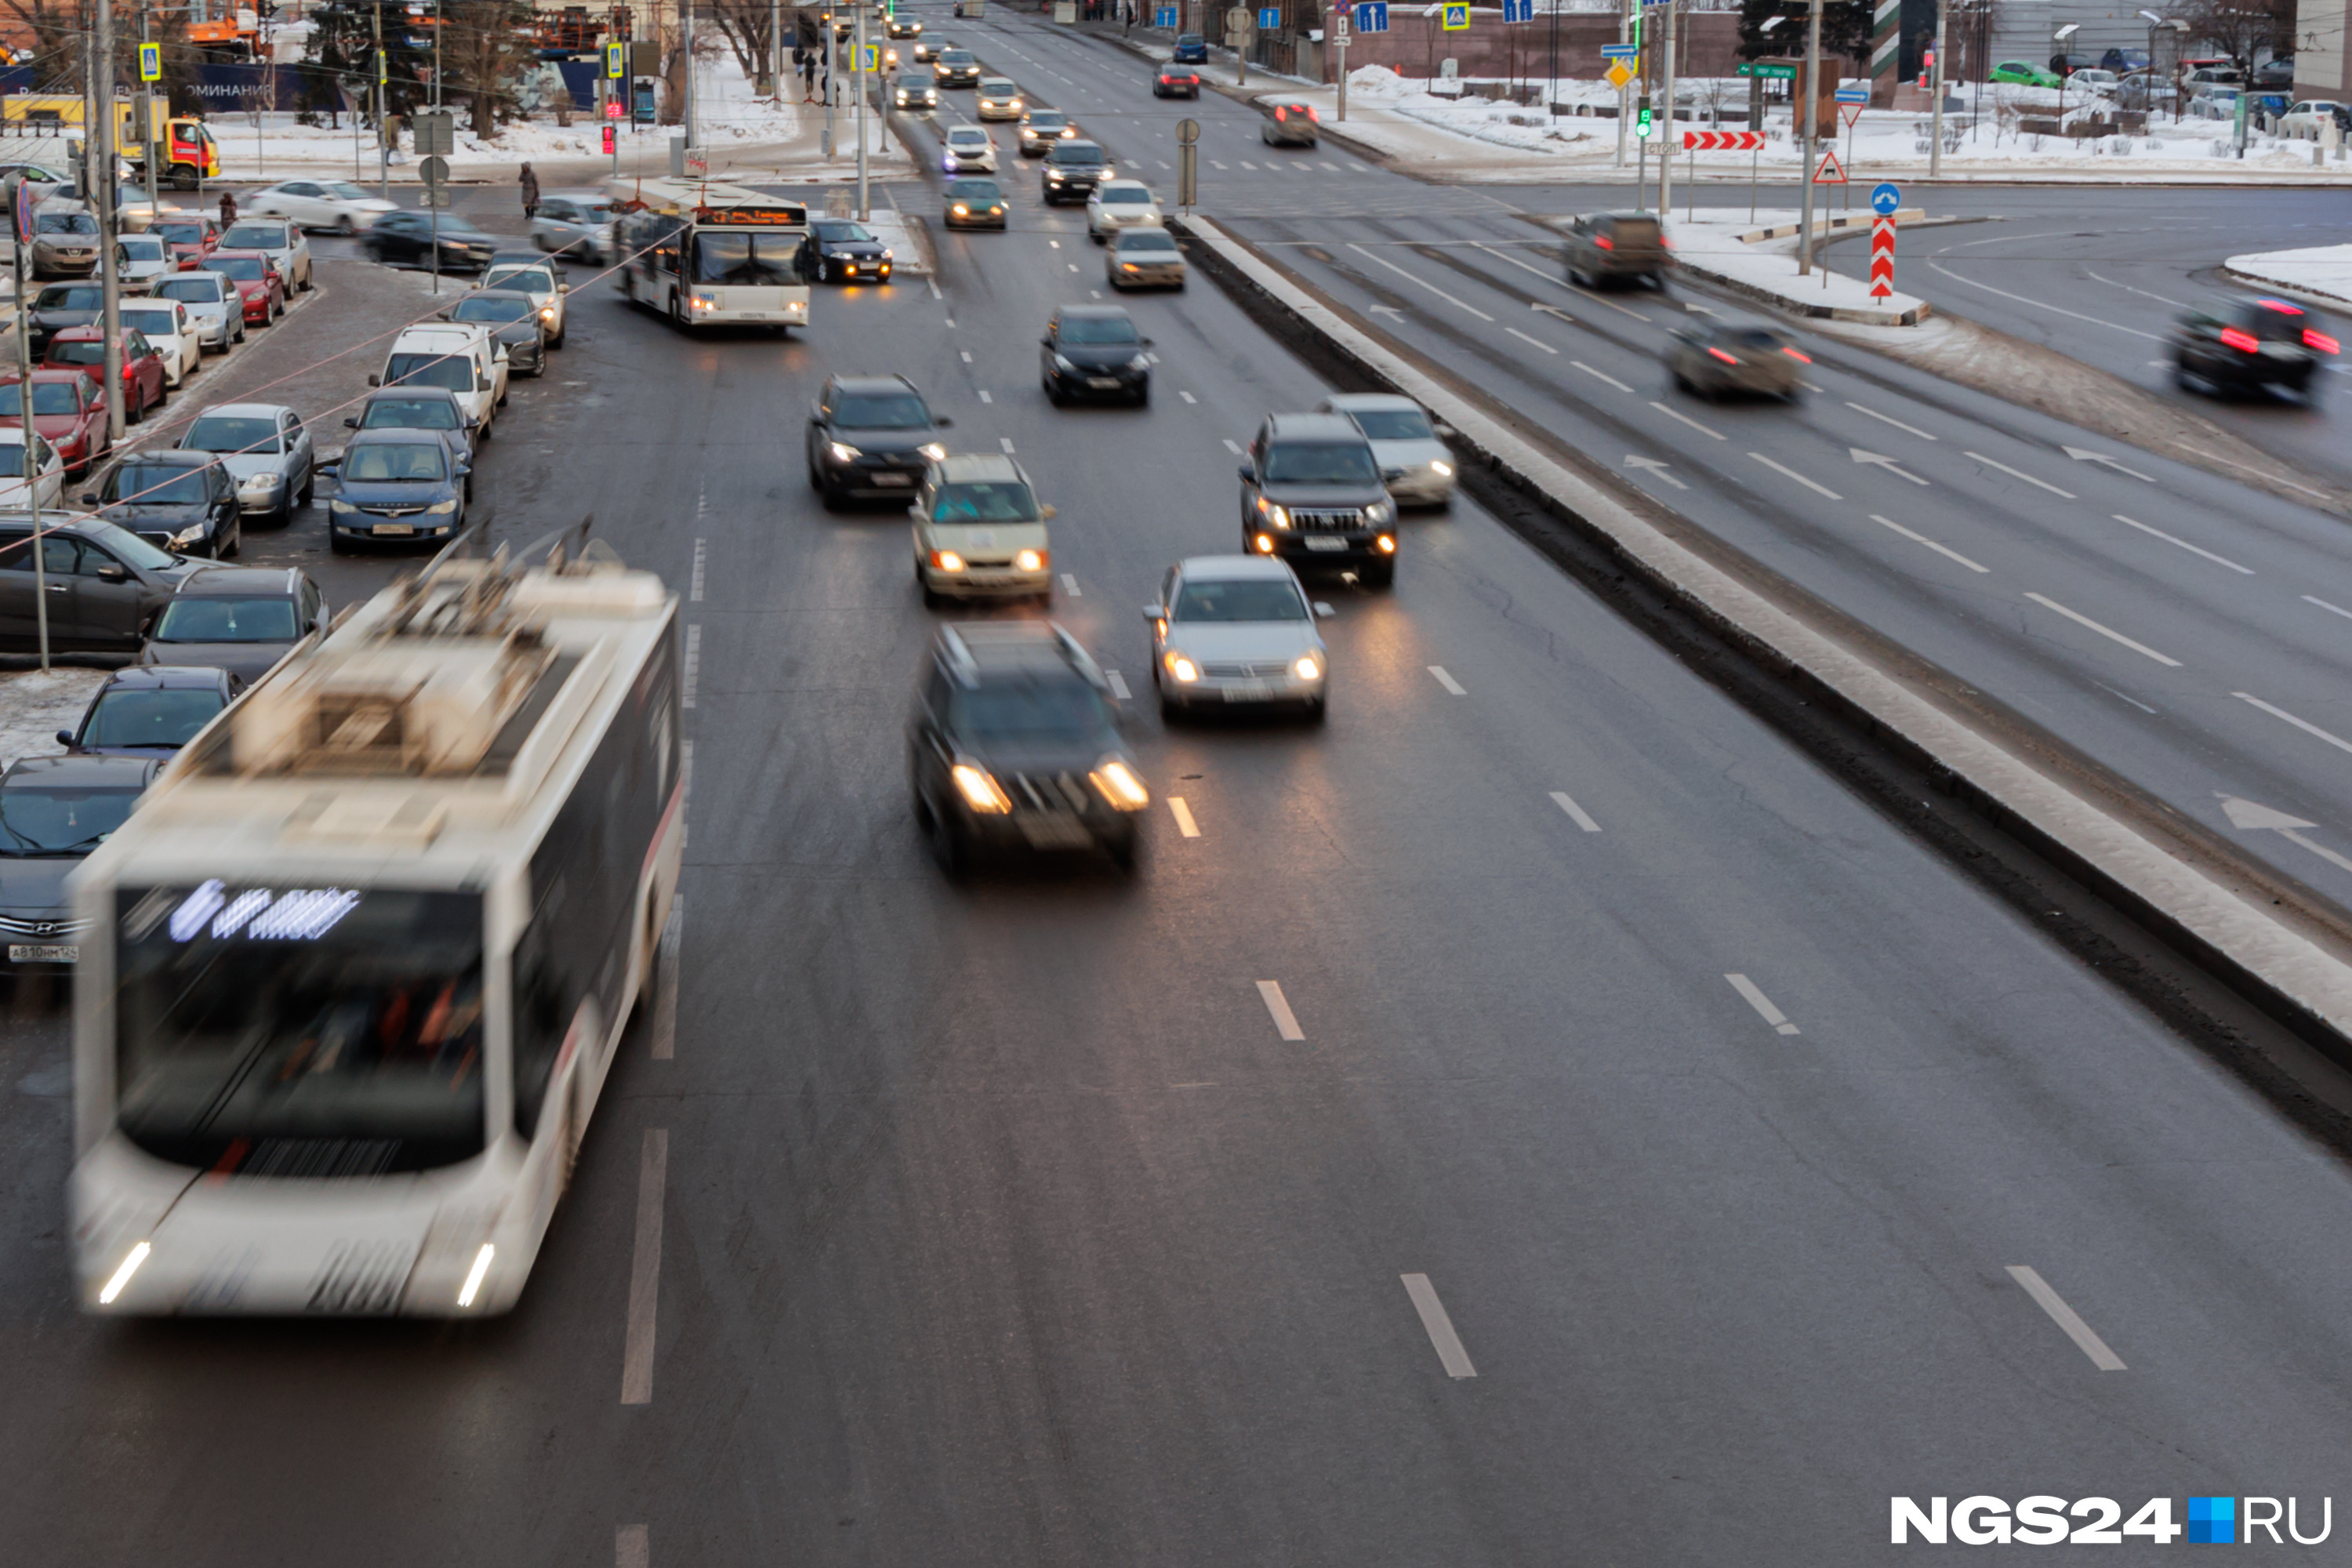 Красноярск опустился в рейтинге общественного транспорта. Ниже всего оценили развитие и безопасность автобусов